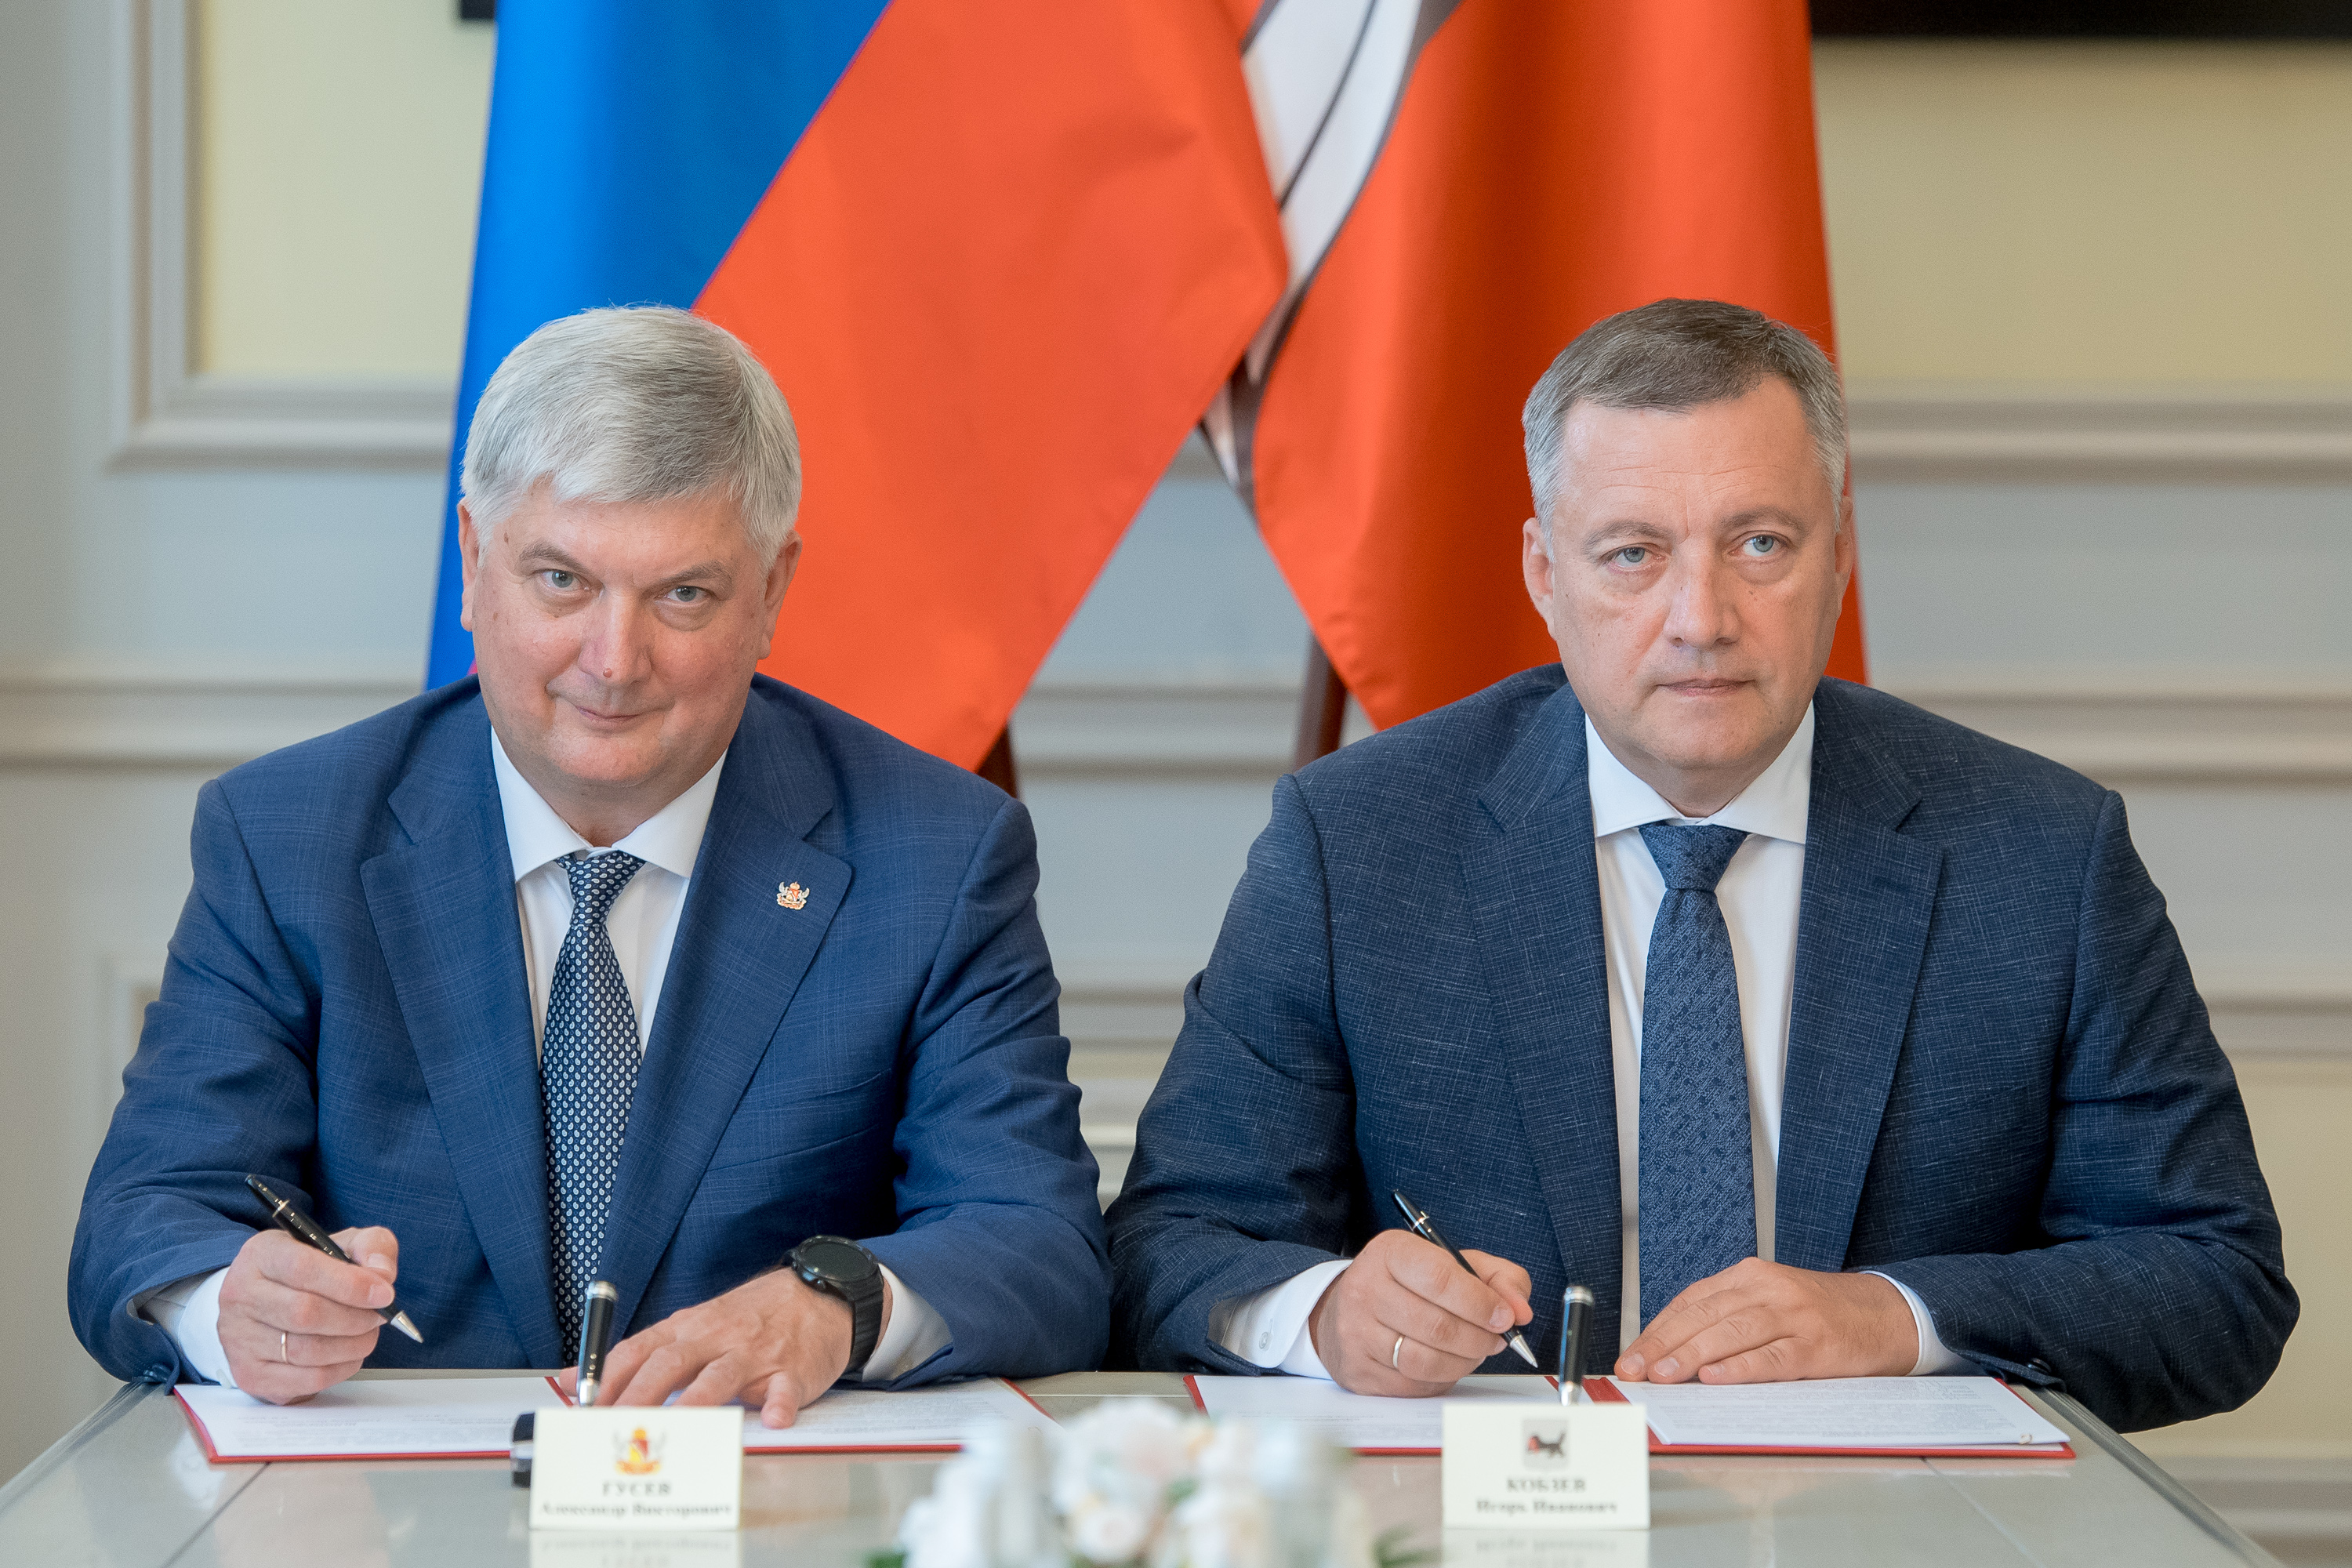 Межрегиональные связи: заключение договора между Воронежской и Иркутской областями